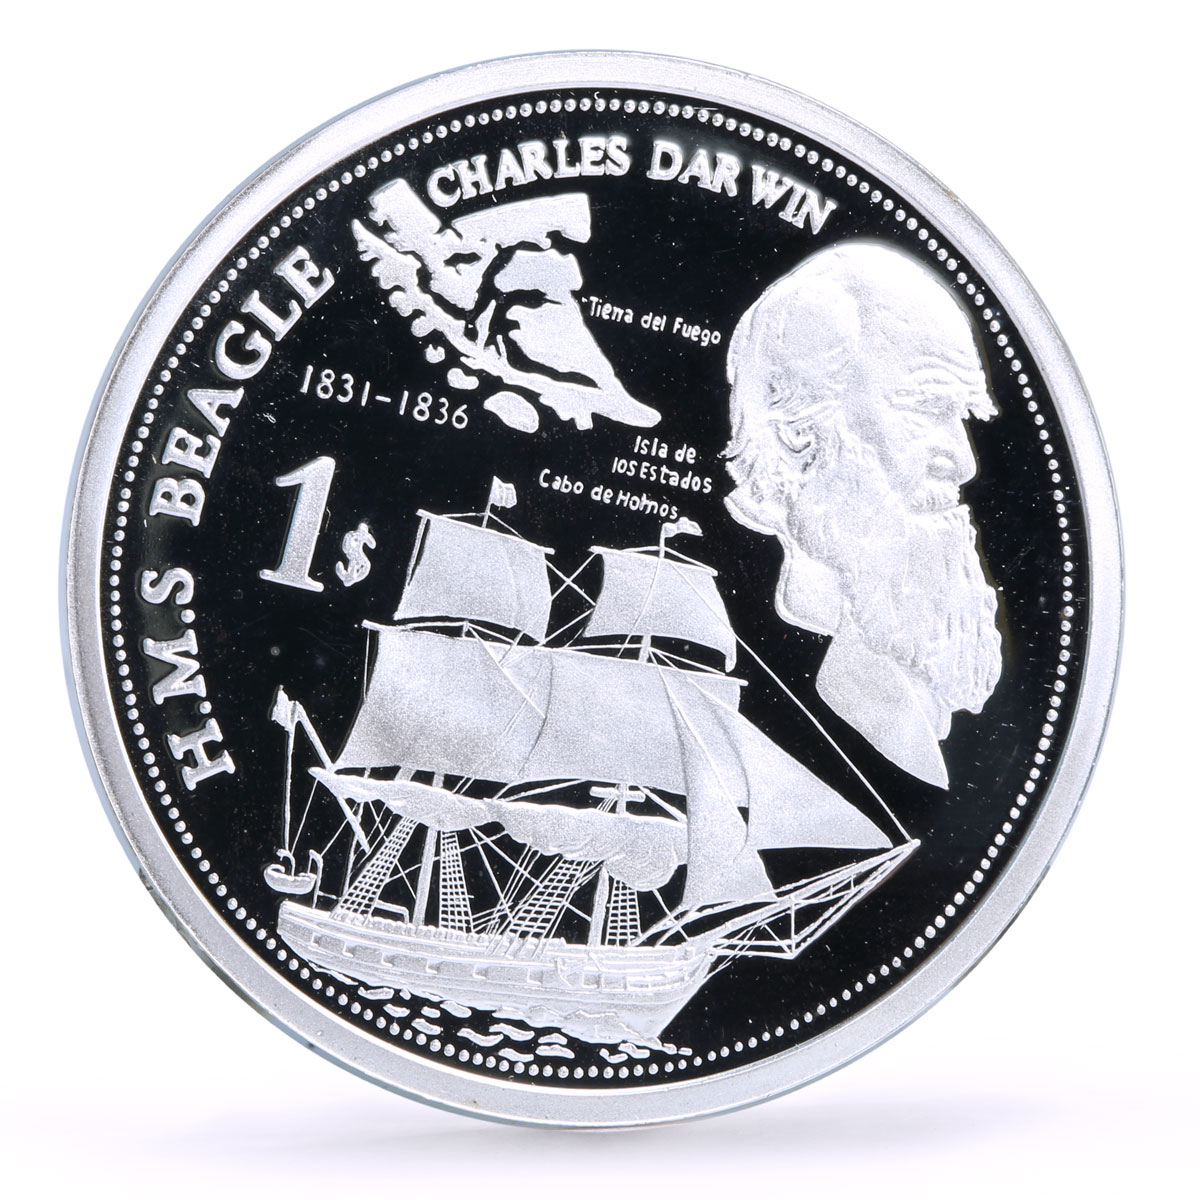 Solomon Islands 1 dollar Seafaring Beagle Ship Charles Darwin silver coin 2009